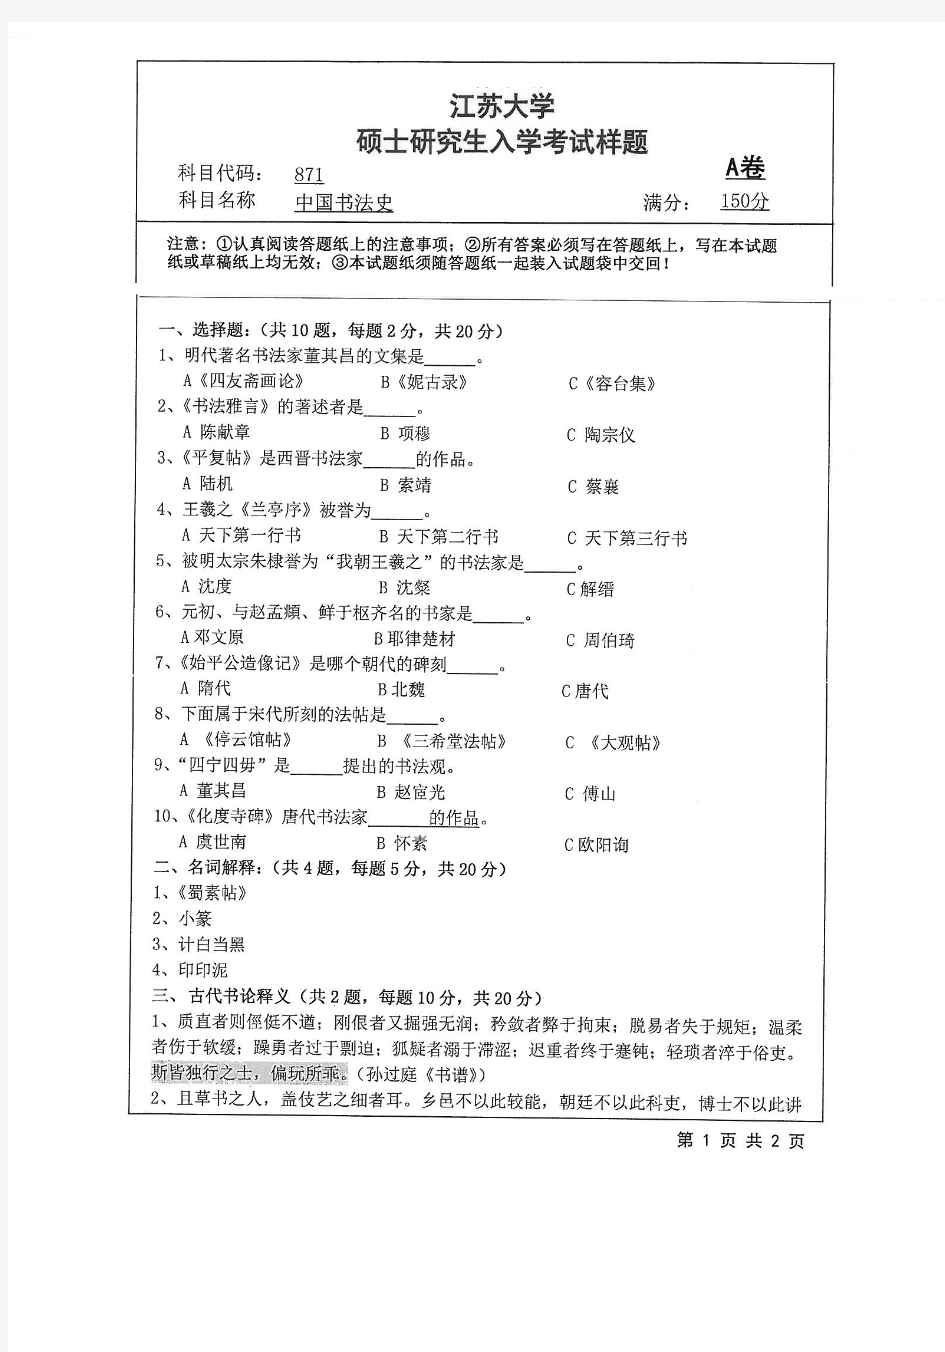 2018年江苏大学871中国书法史考研真题硕士研究生入学考试试题